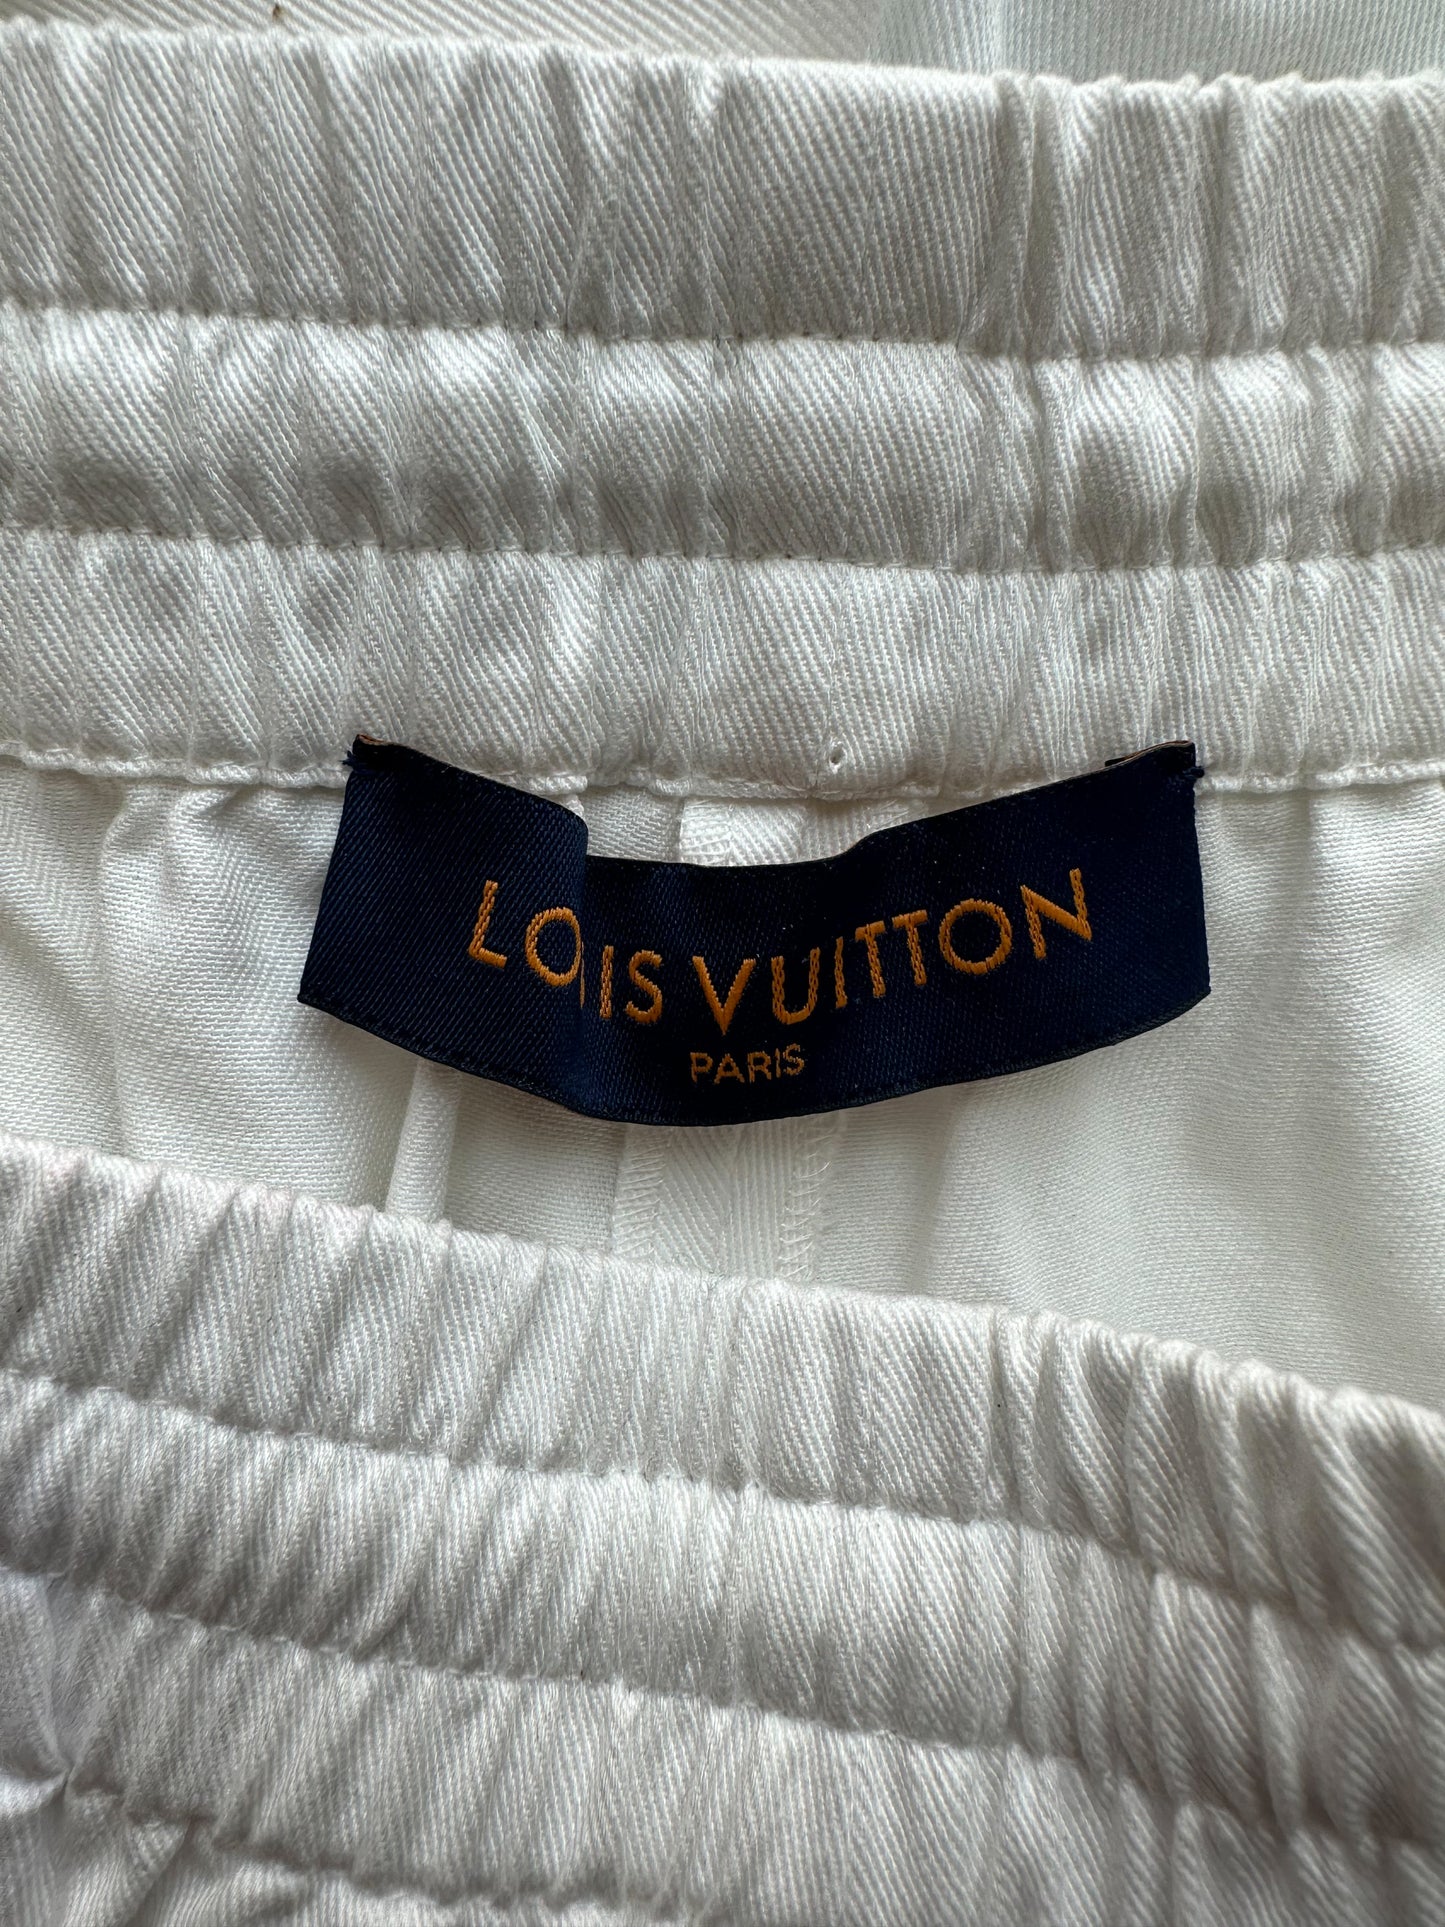 Shop Louis Vuitton Monogram Logo Basket Ball Pants Shorts by